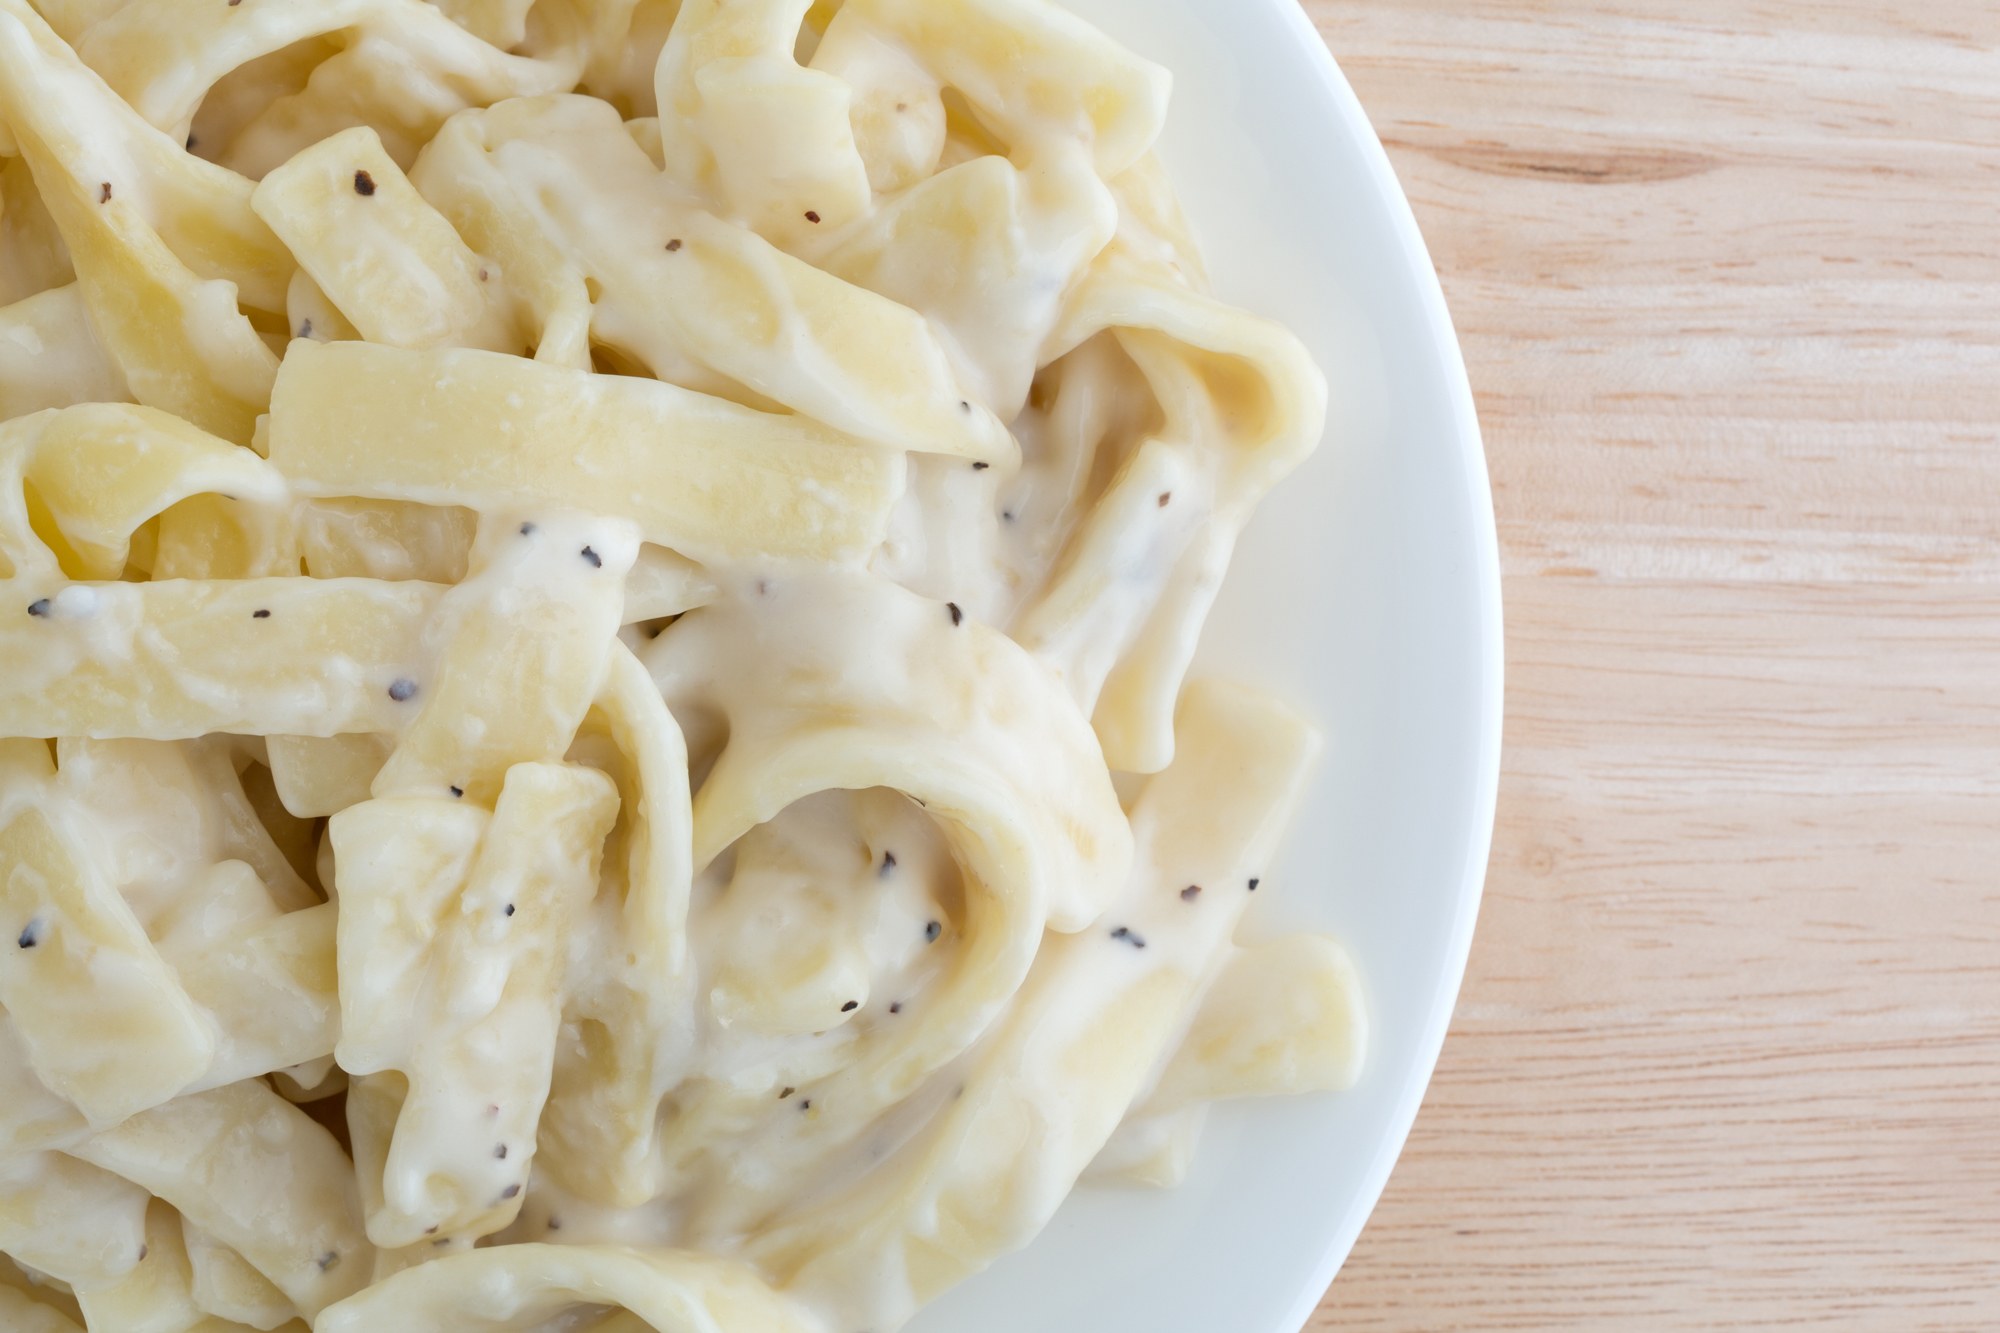 easy pasta recipes